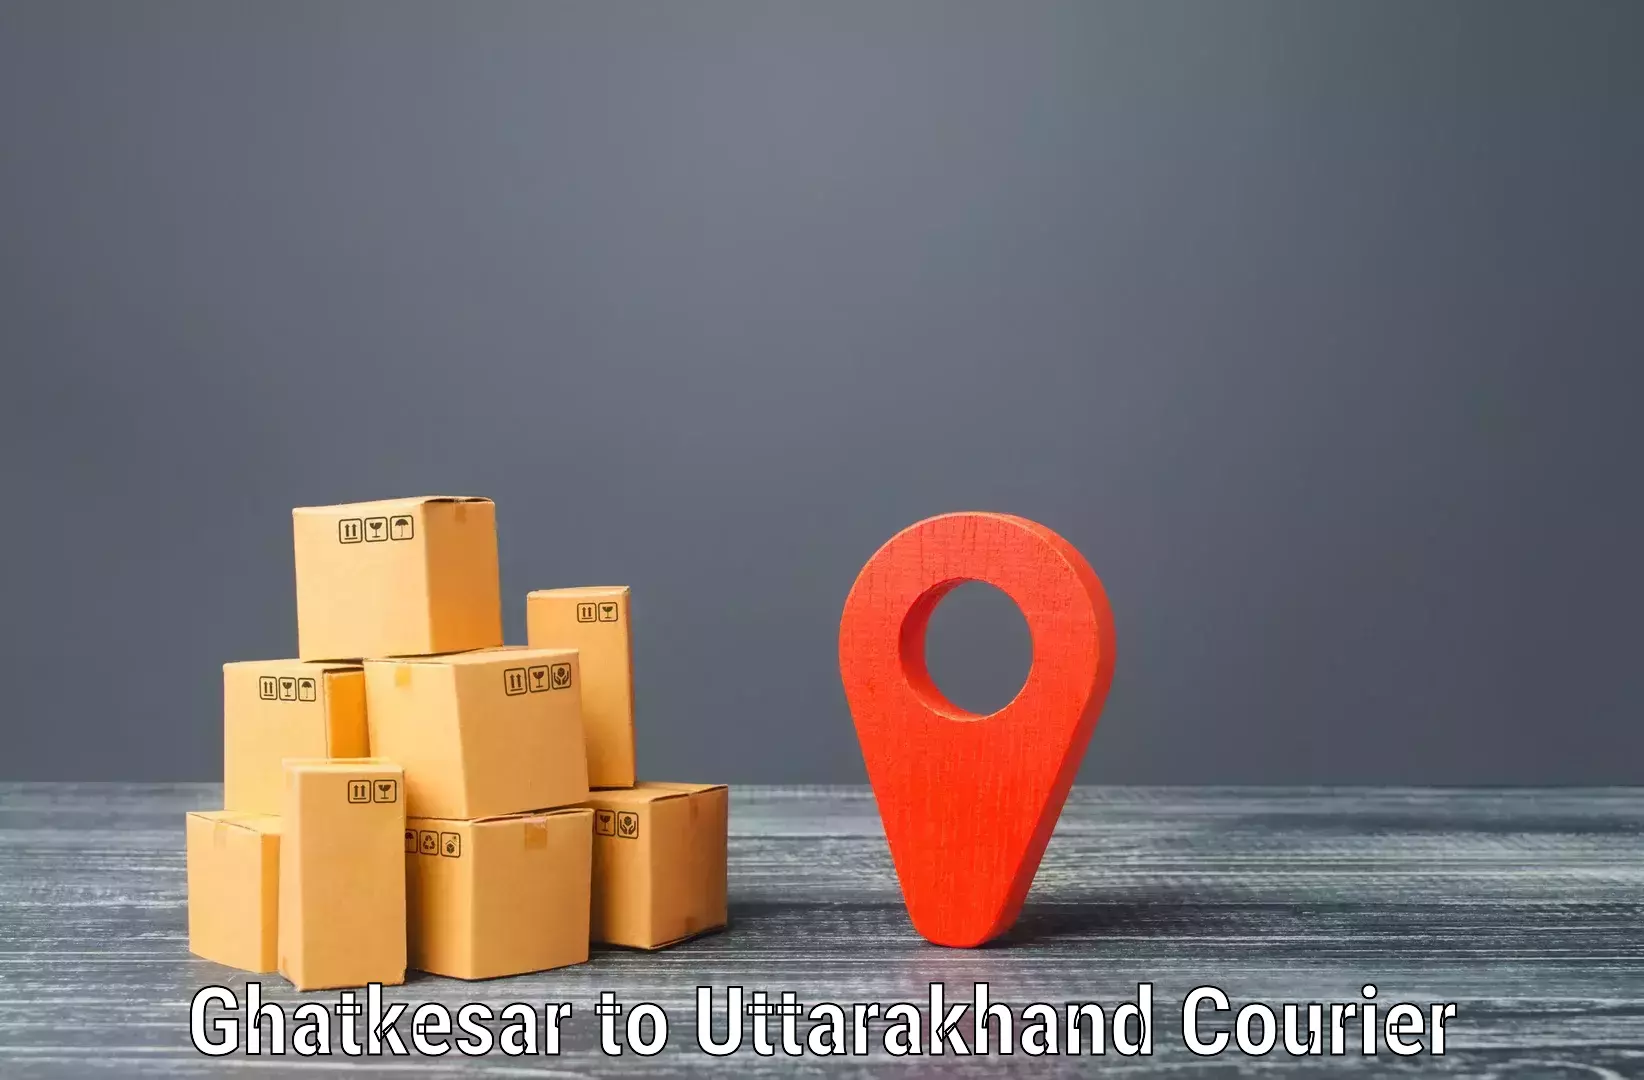 High-capacity parcel service Ghatkesar to IIT Roorkee